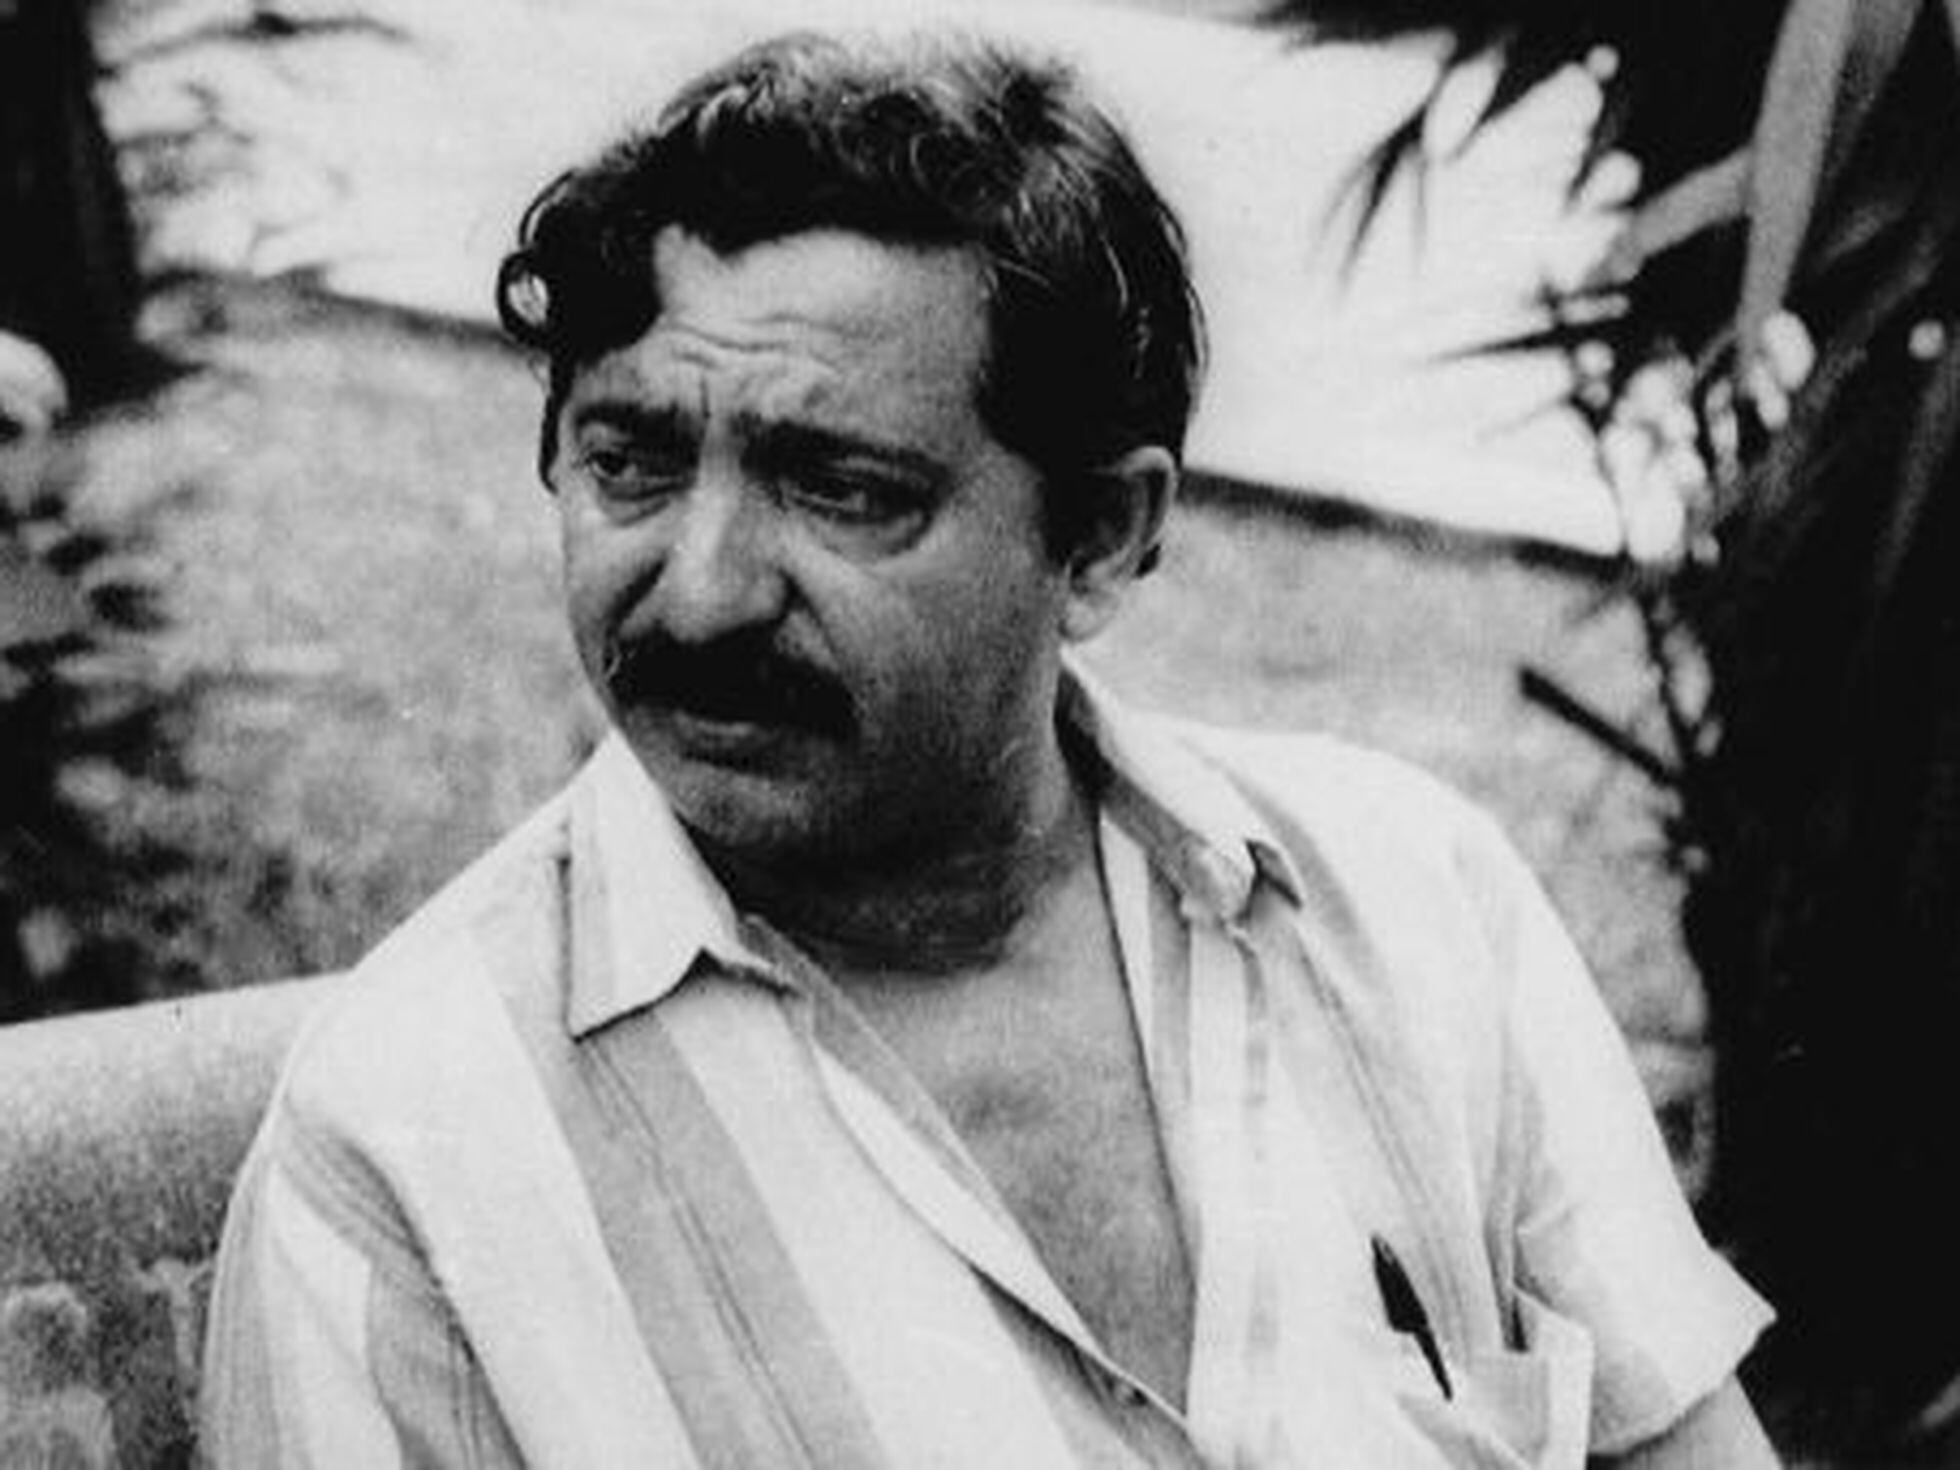 ARTIGO  Chico Mendes 30 anos: uma memória a honrar. Um legado a defender –  SINPRO-DF